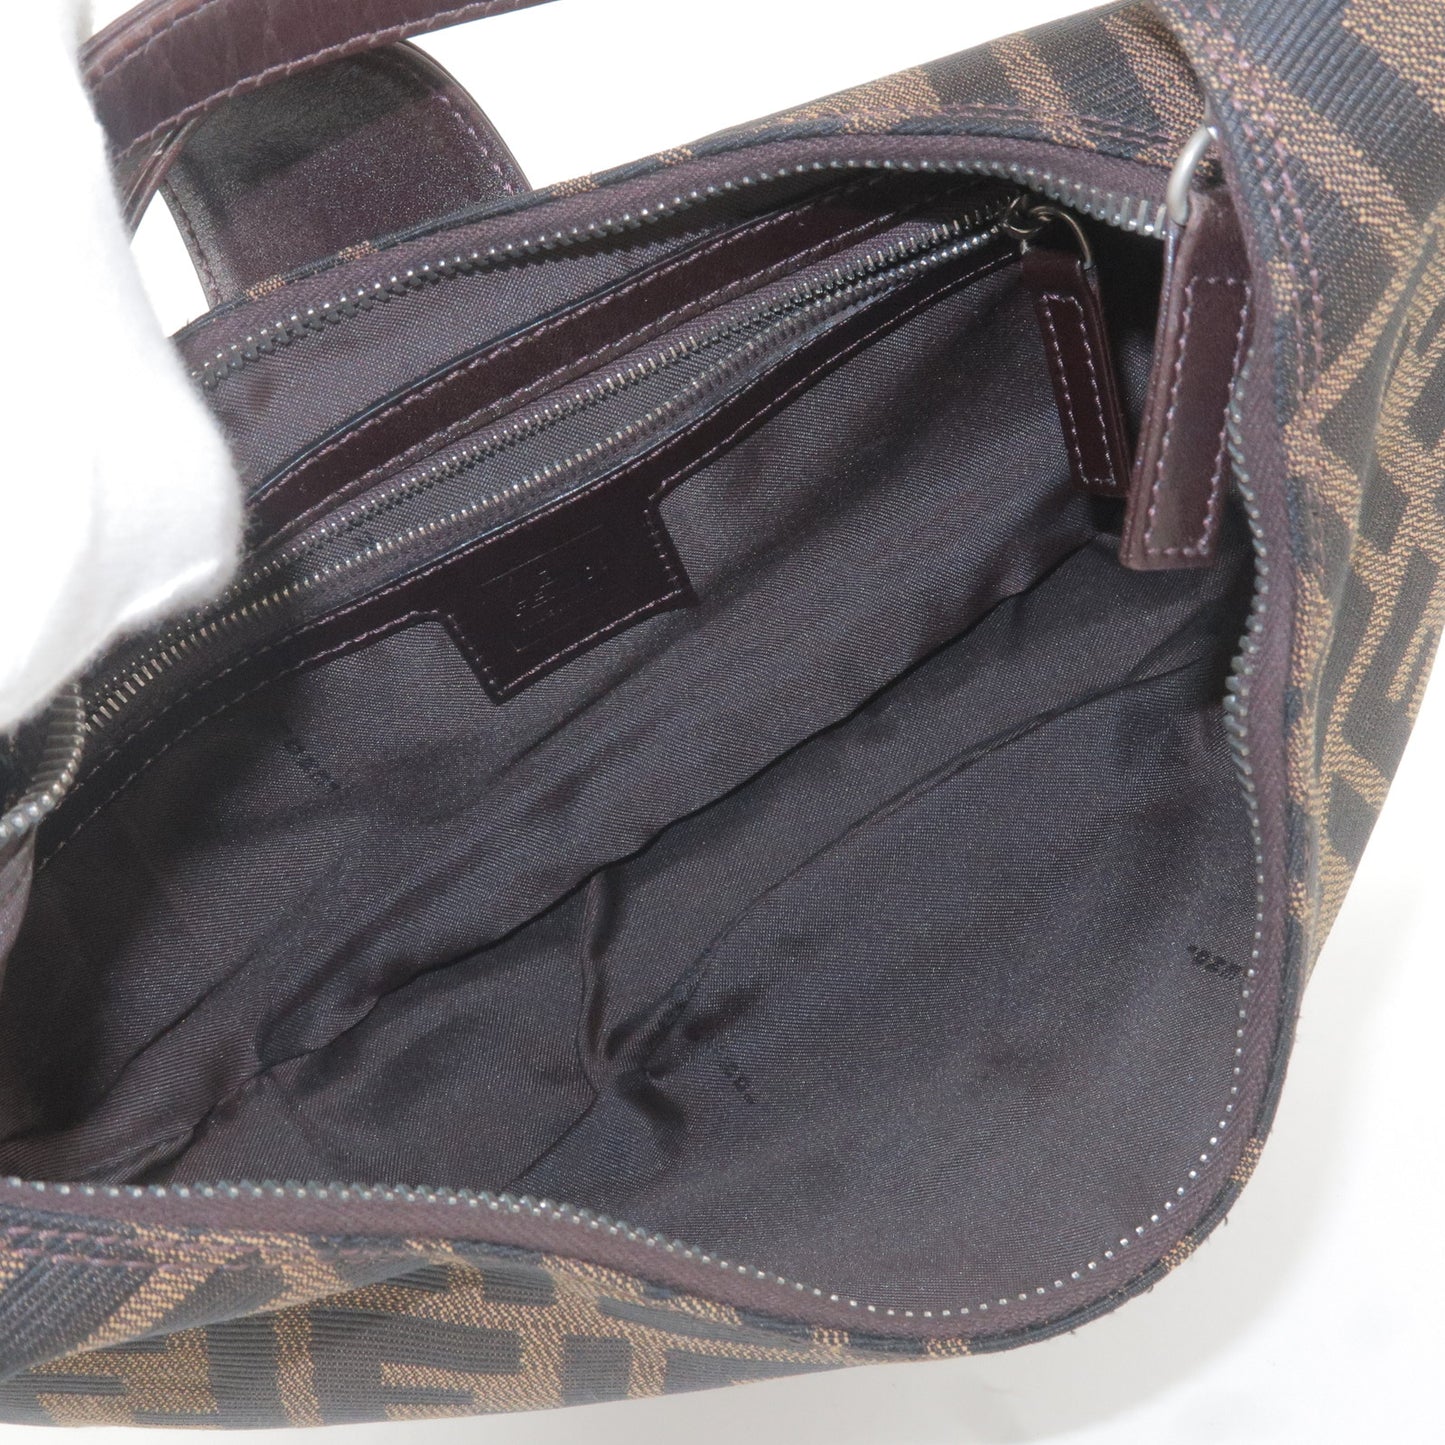 FENDI Zucca Canvas Leather Shoulder Bag Brown Black 16321